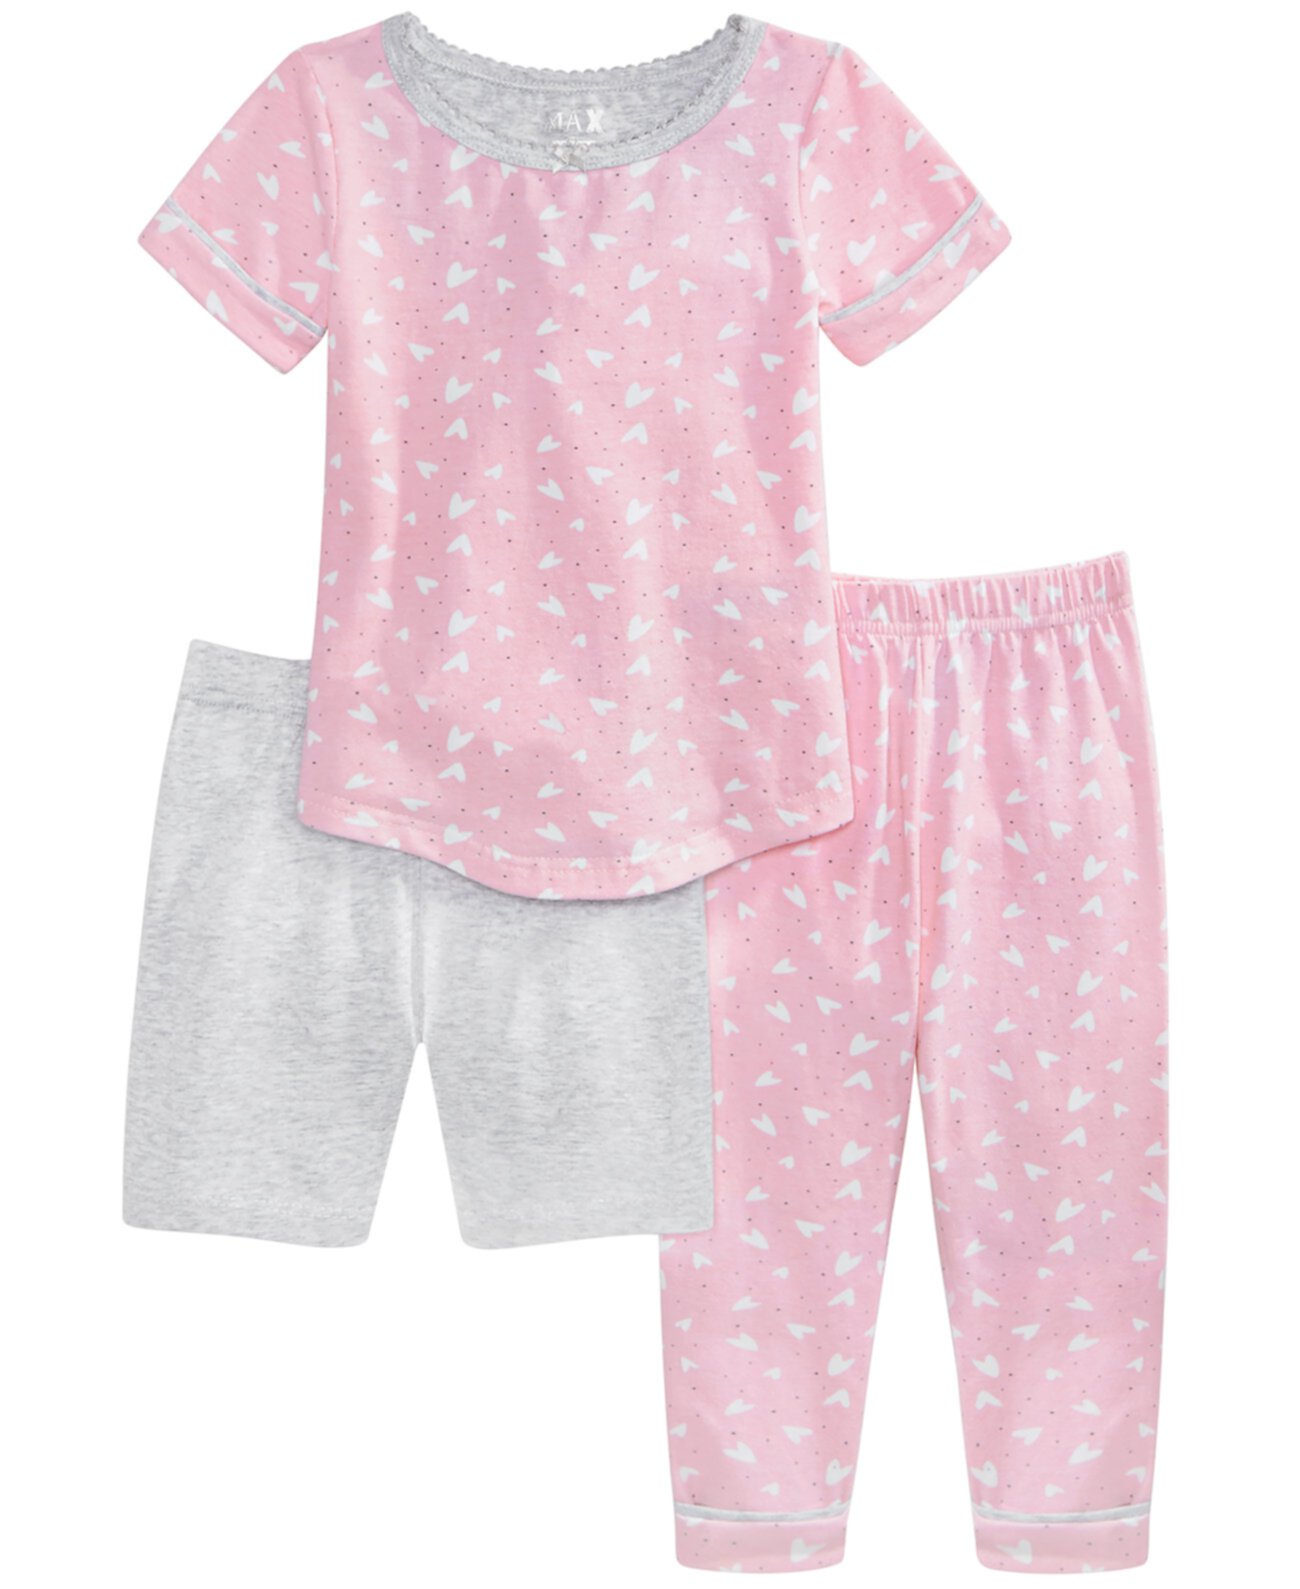 Baby & Toddler Girls 3-Pc. Пижамный комплект с принтом, шортами и брюками Max & Olivia